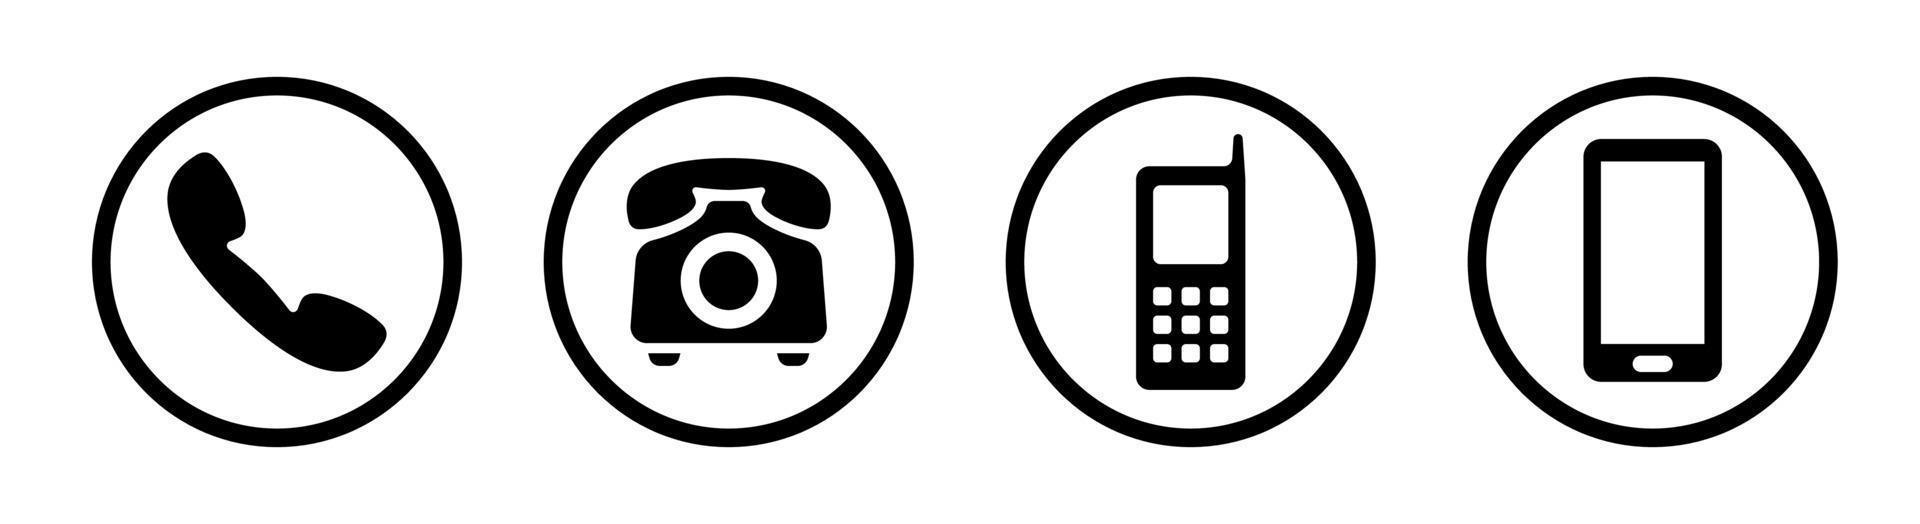 élément de conception d'icône de téléphone adapté aux sites Web, à la conception d'impression ou à l'application vecteur